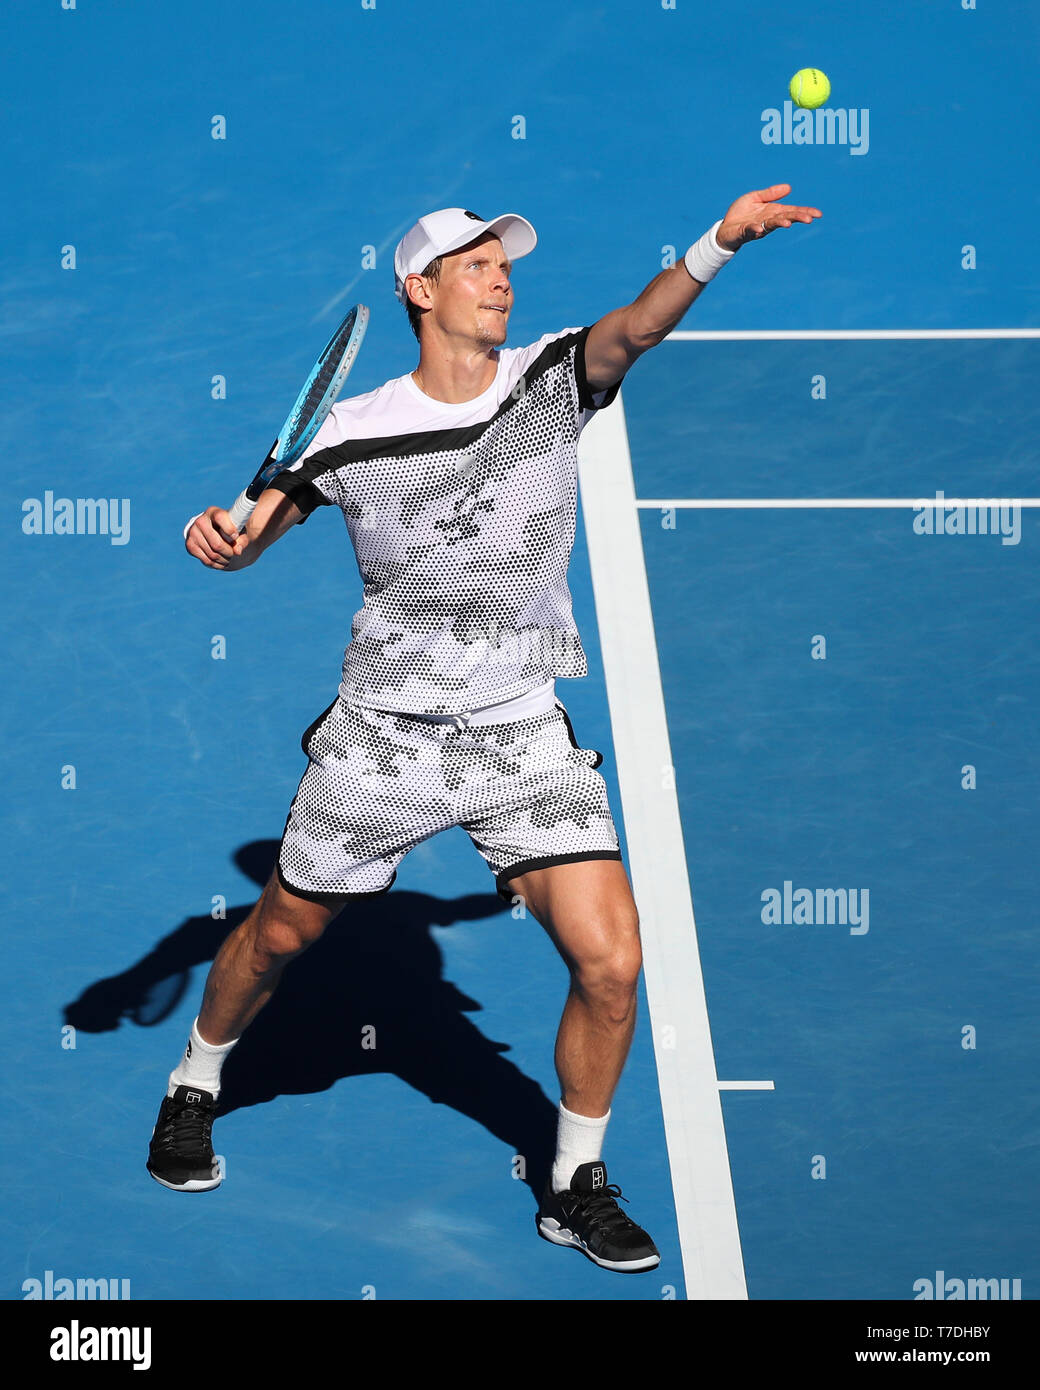 Tschechische Tennisspieler Tomas Berdych spielen Service Schuß in  Australian Open 2019 Tennis Turnier, Melbourne Park, Melbourne, Victoria,  Australien Stockfotografie - Alamy